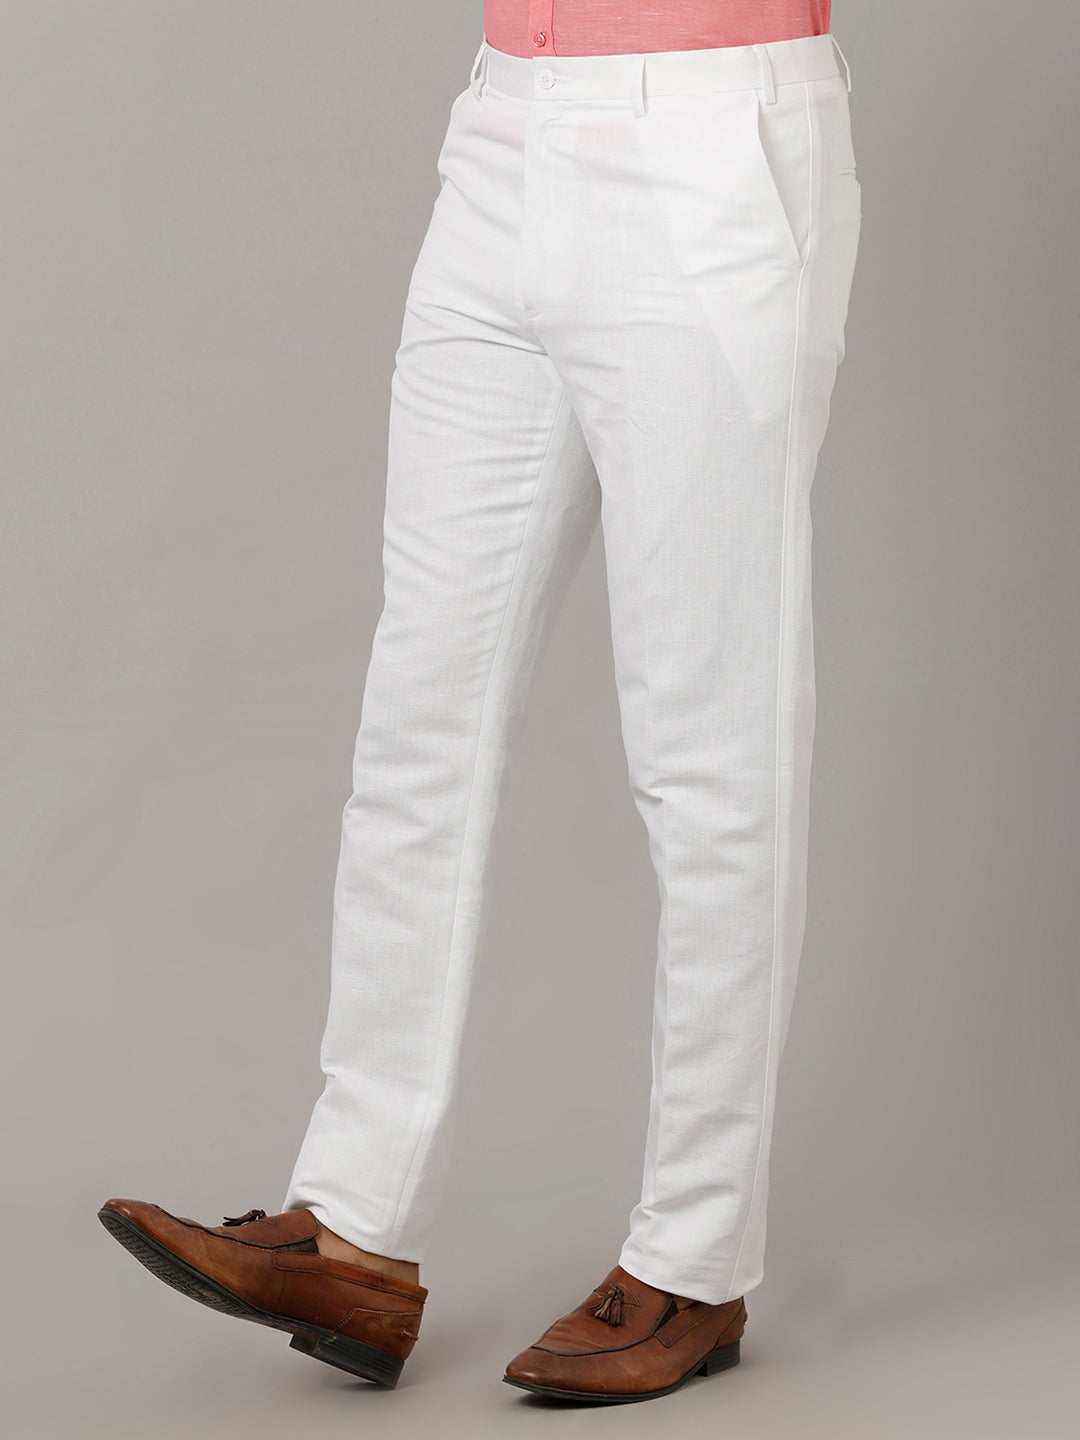 Mens Linen Cotton Trim Fit White Pants